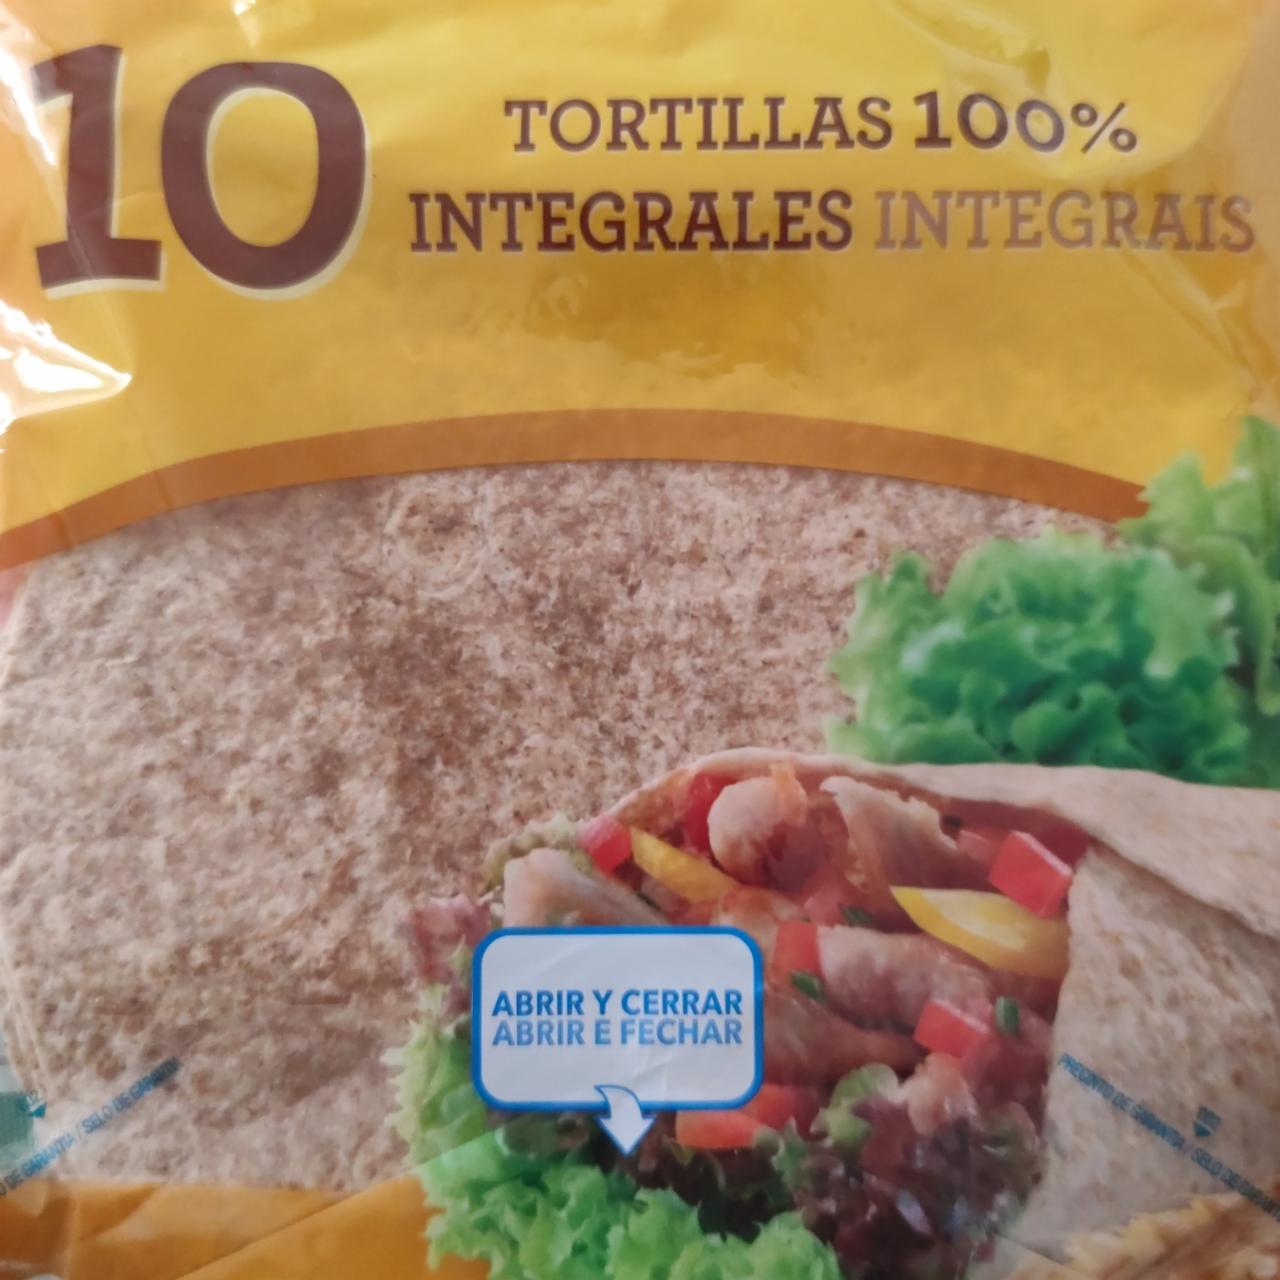 Фото - Тортилья цельнозерновая Tortillas 100% Integrales Hacendado